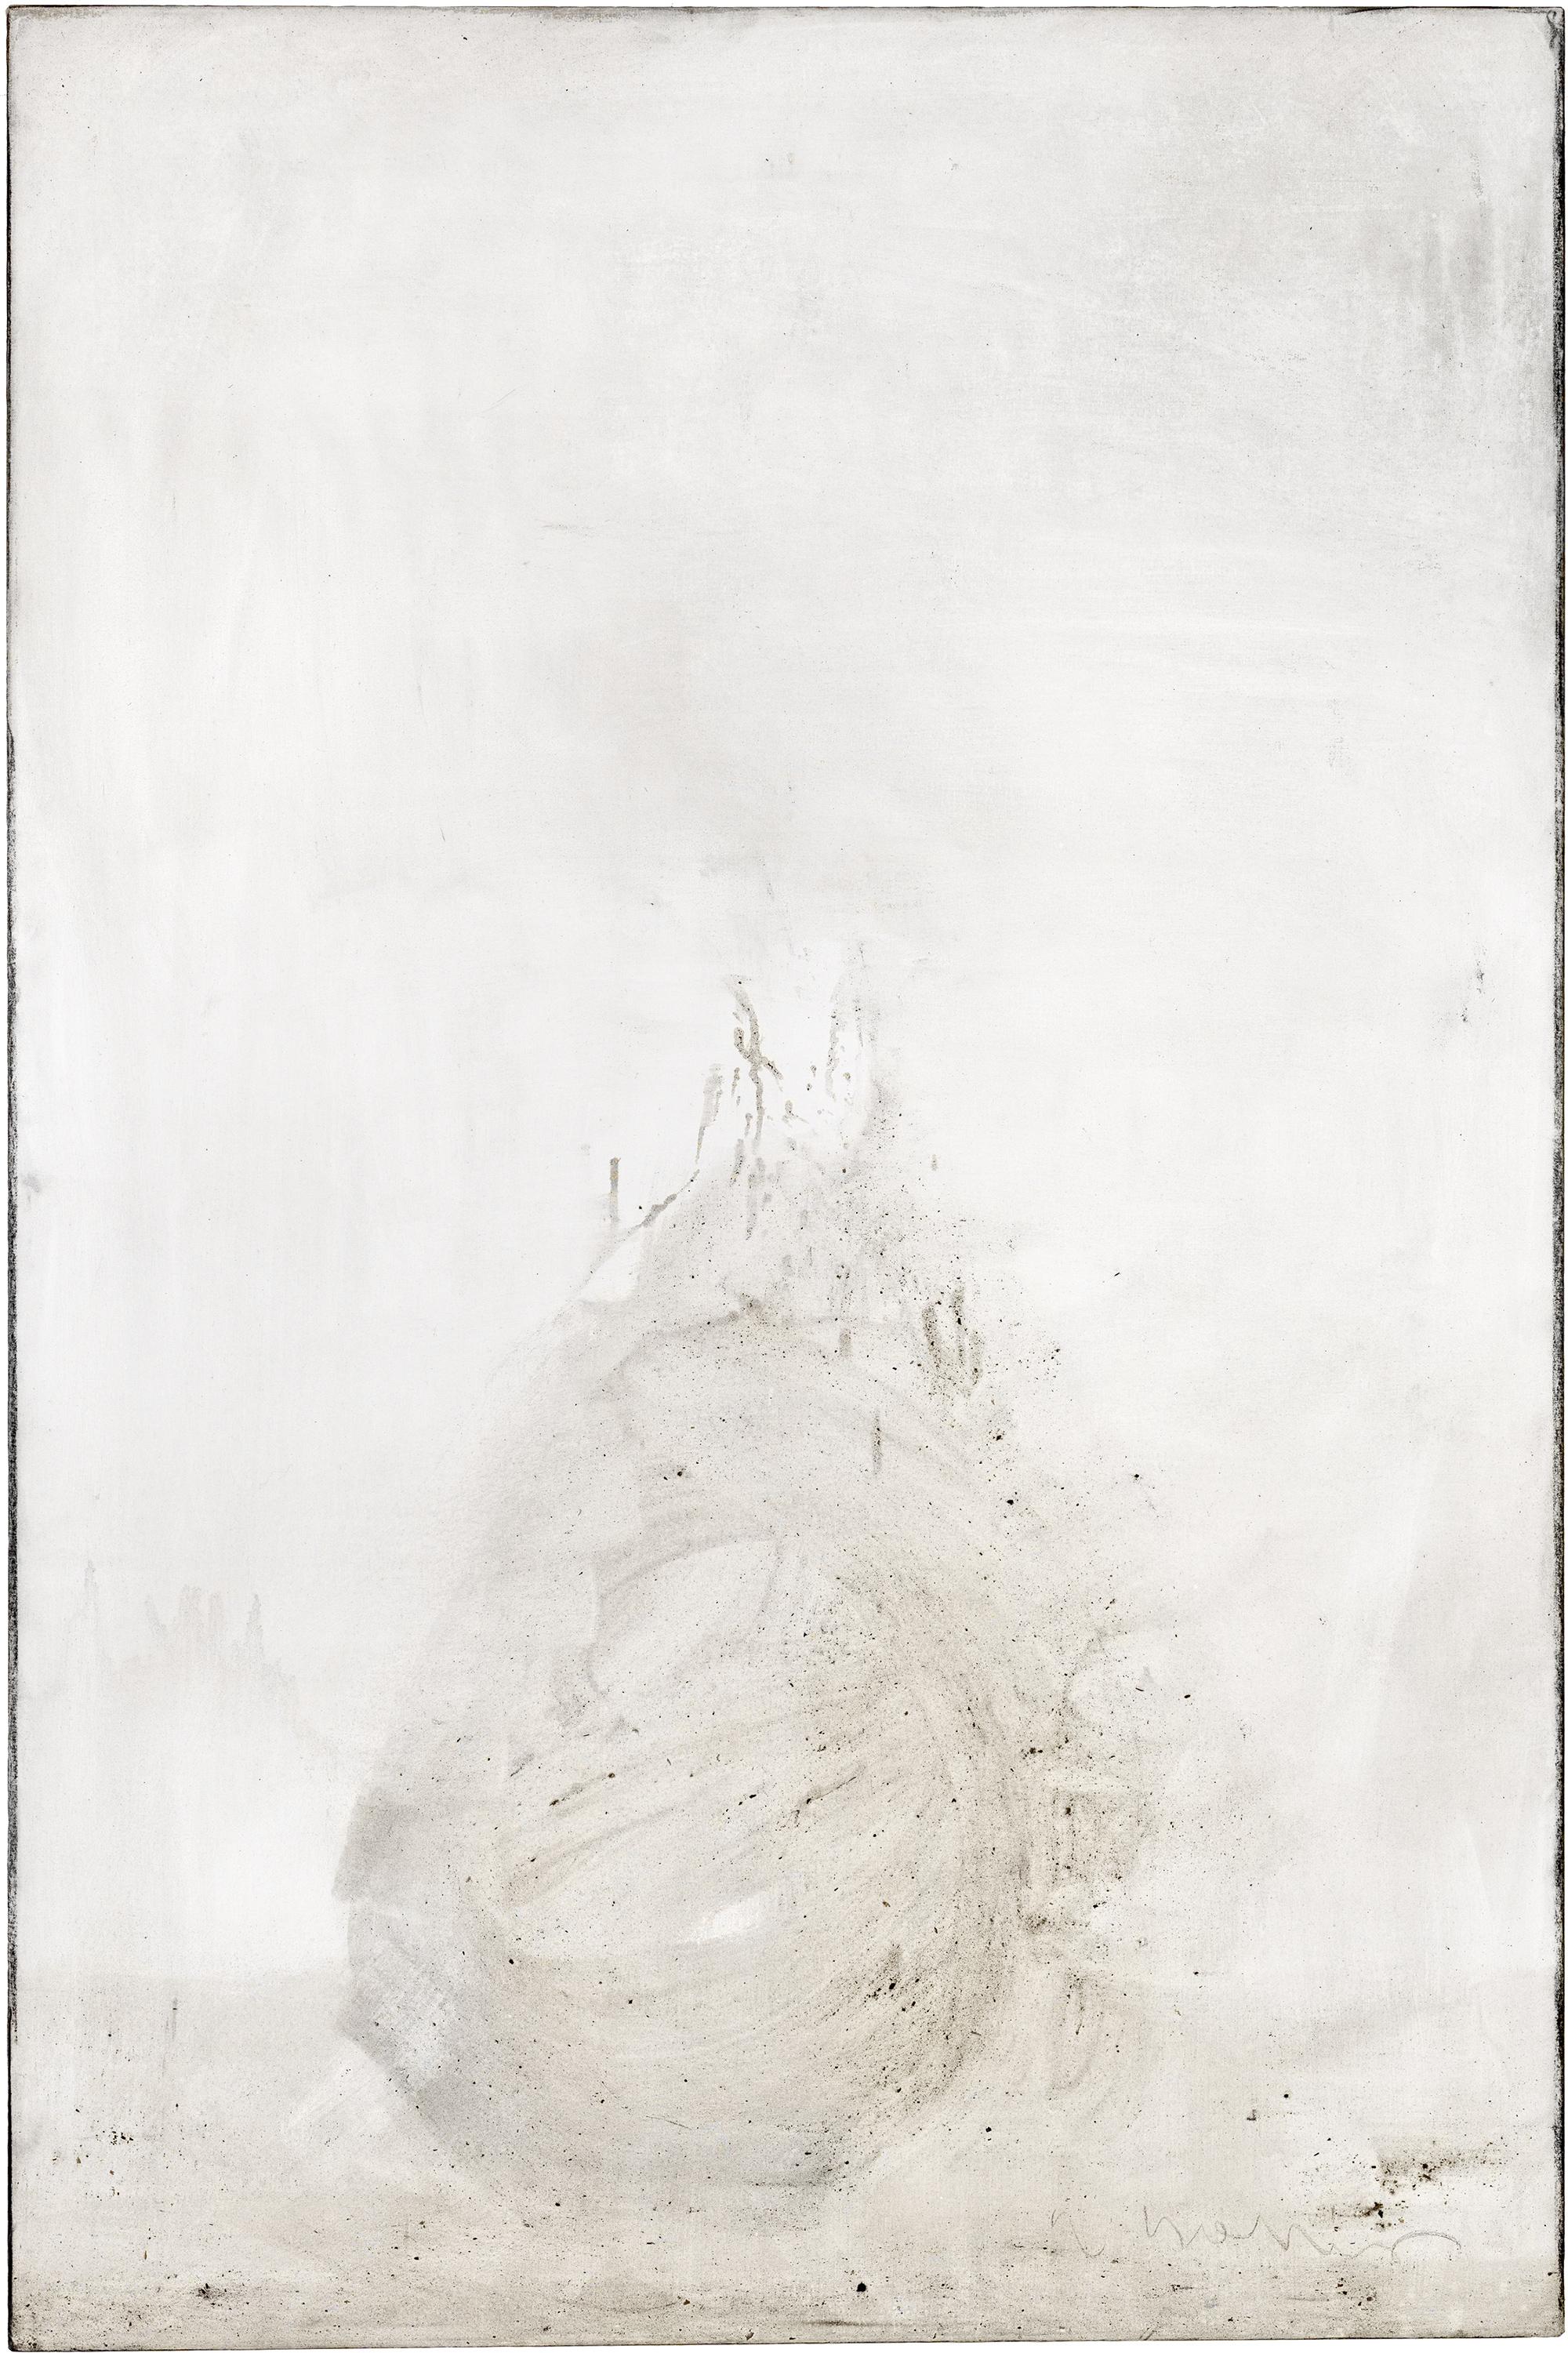 Ashes to Ashes 6  // Asche in Eitempera auf Leinwand // 150 x 100 cm // 2011